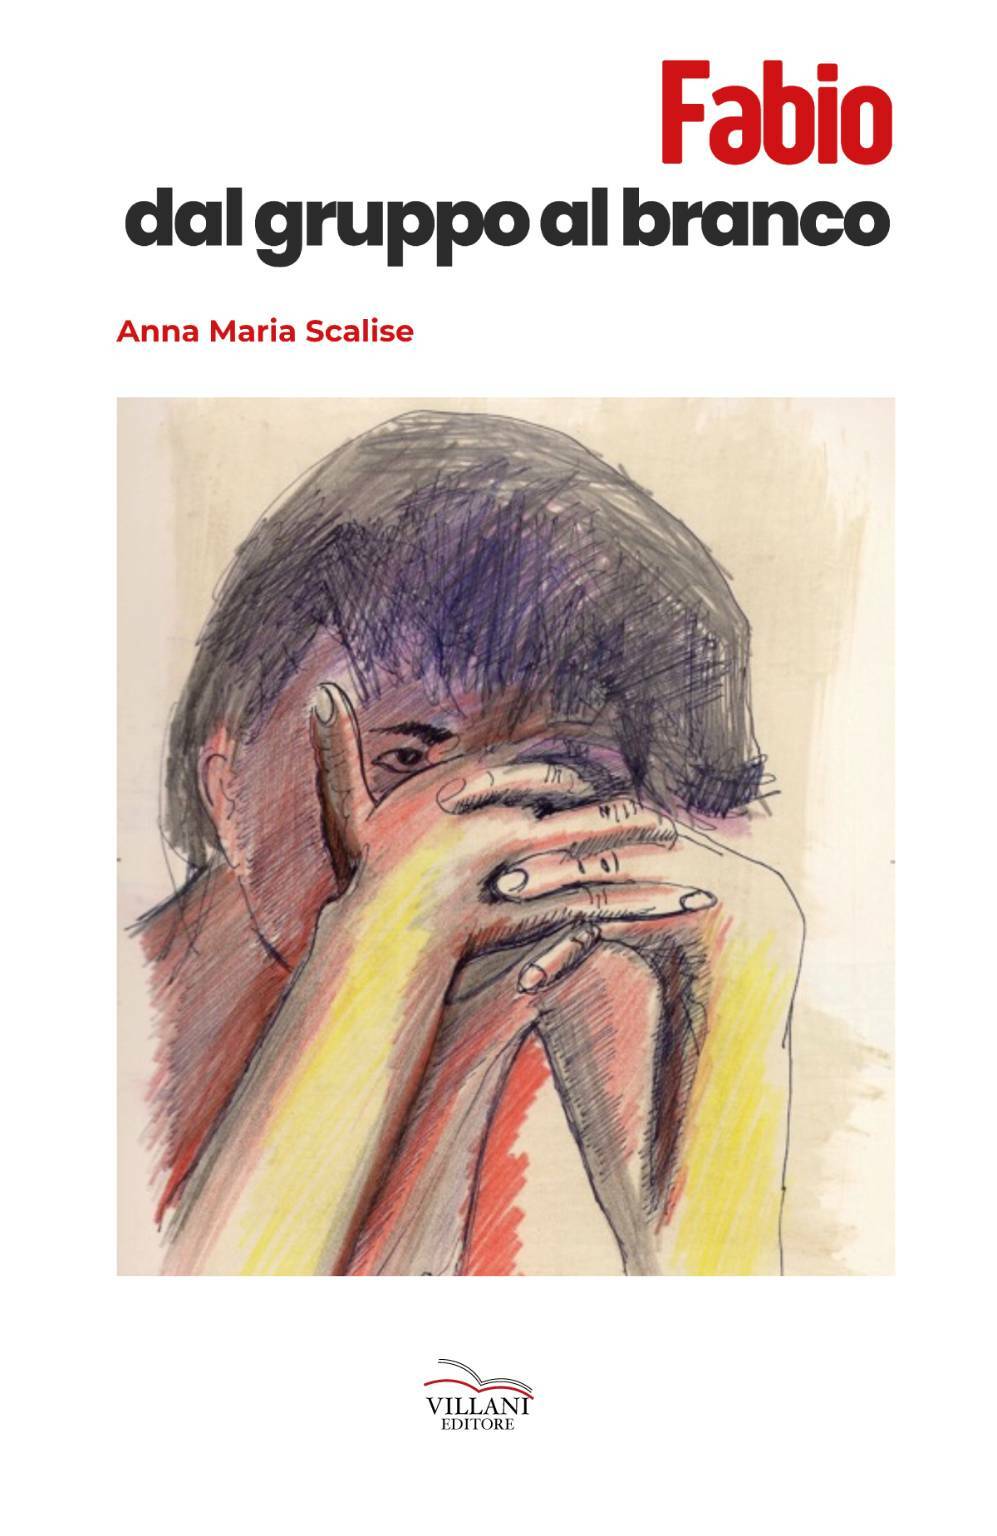 “Fabio, dal gruppo al branco”, il 13 dicembre la presentazione del libro di Anna Maria Scalise